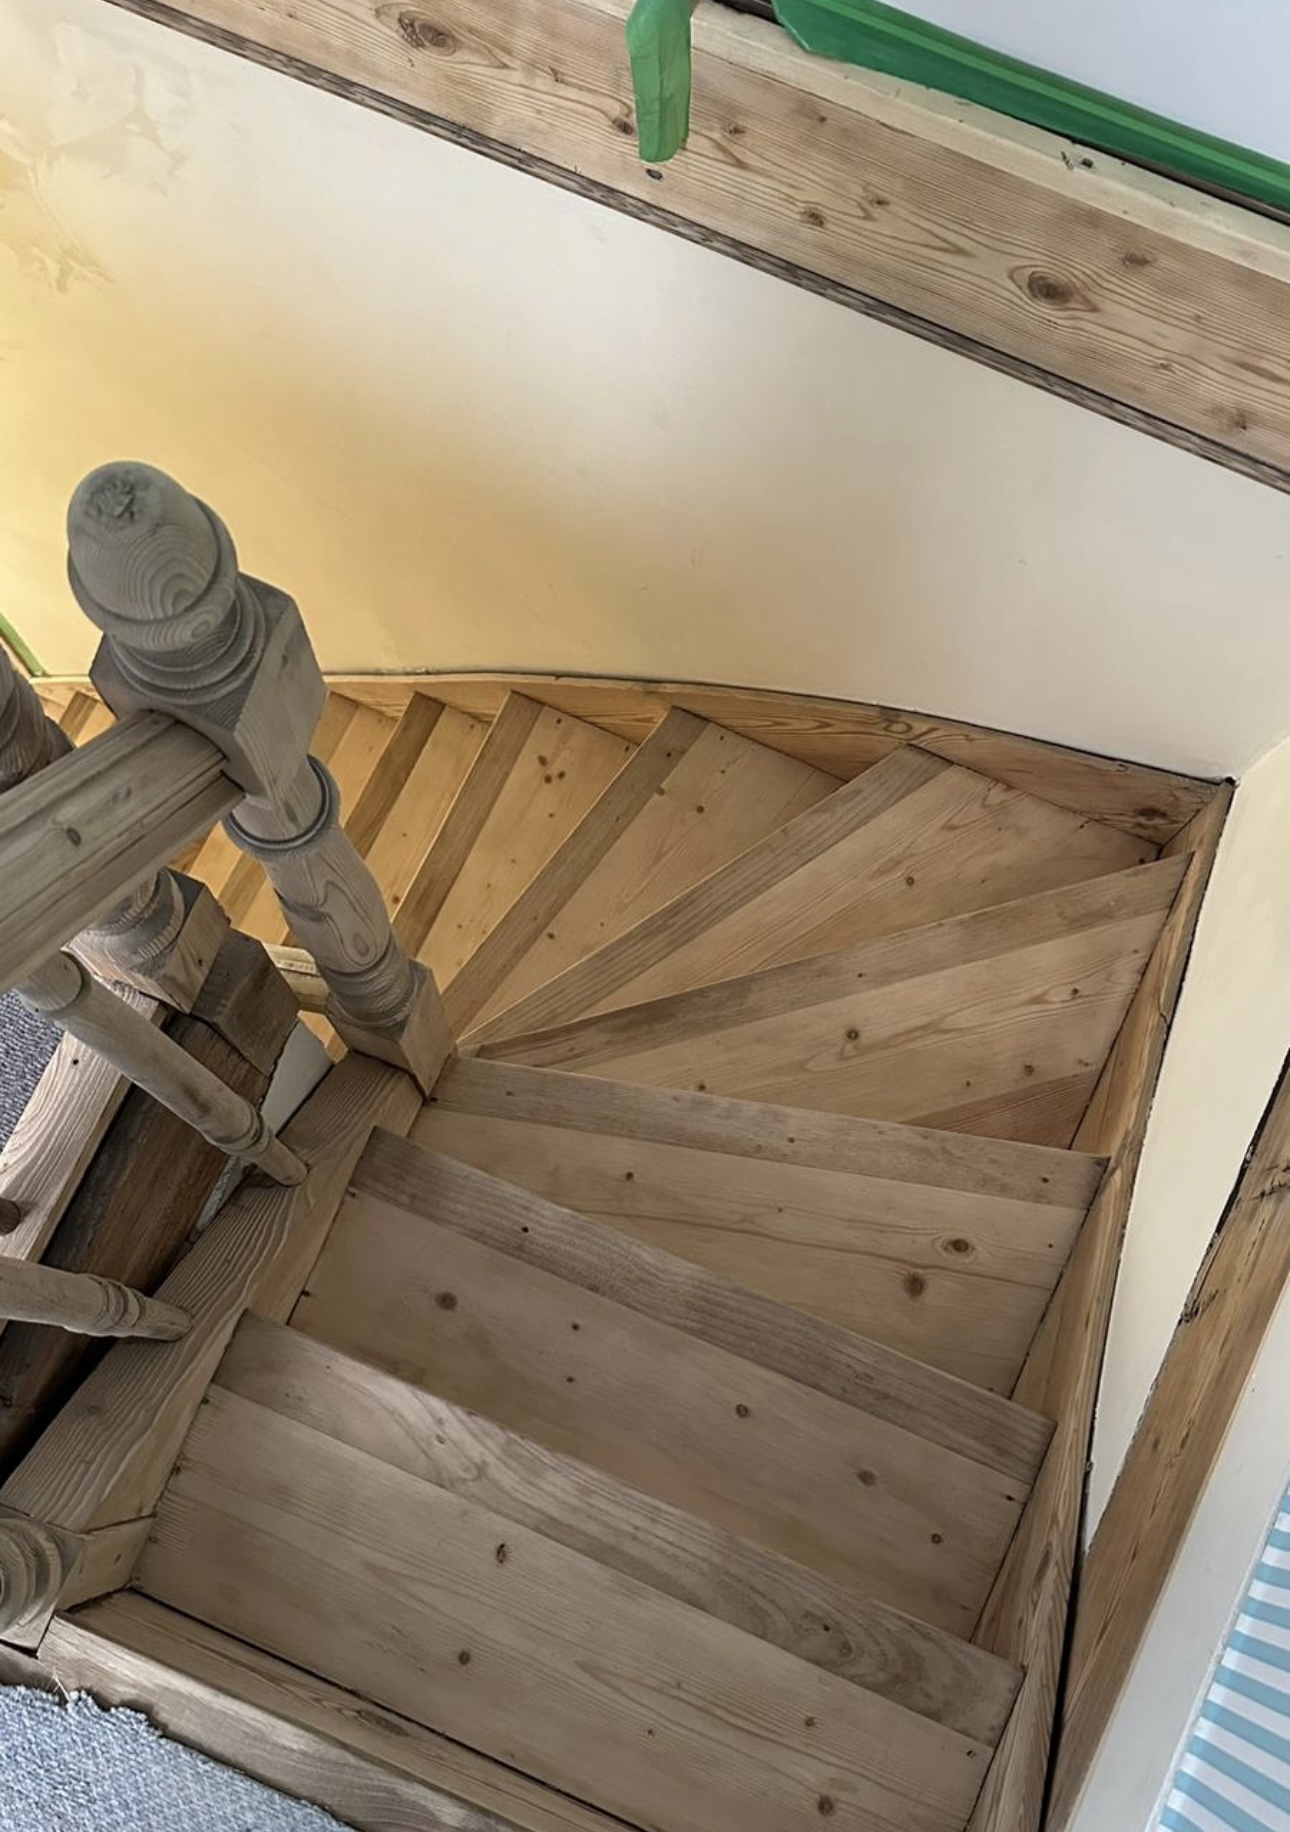 rénovation escalier bois